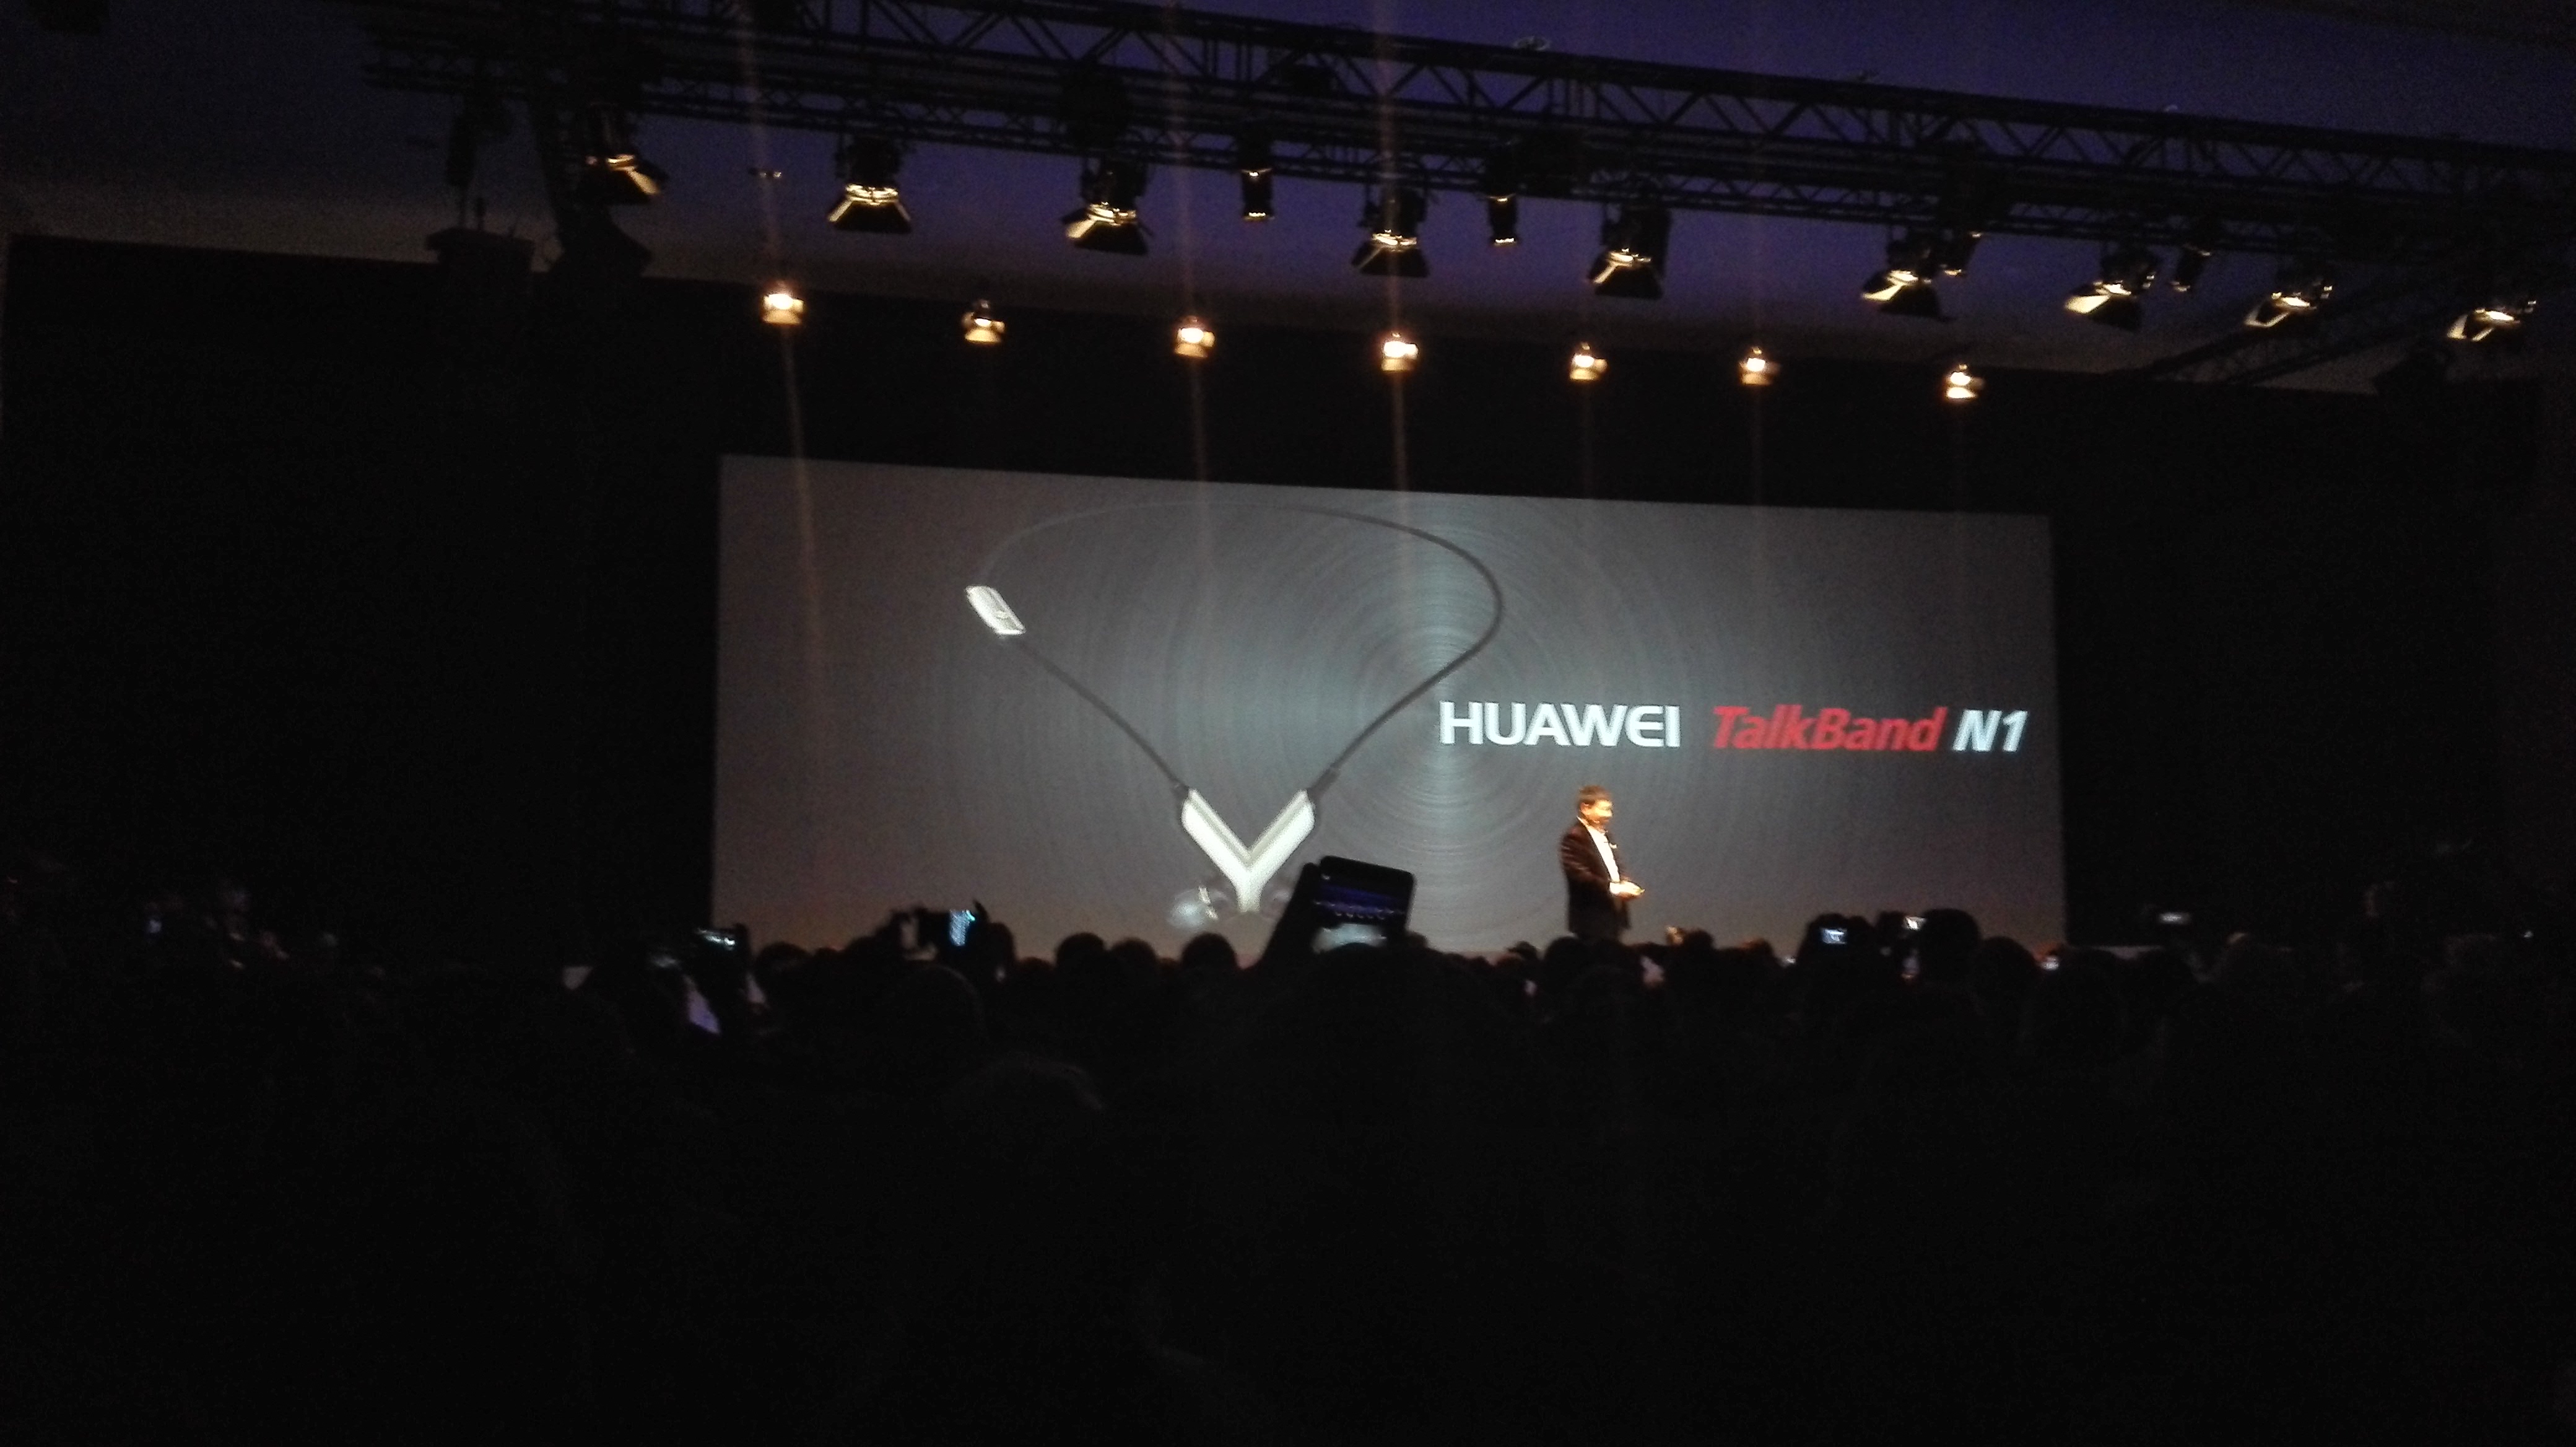 Huawei-TalkBand-N1